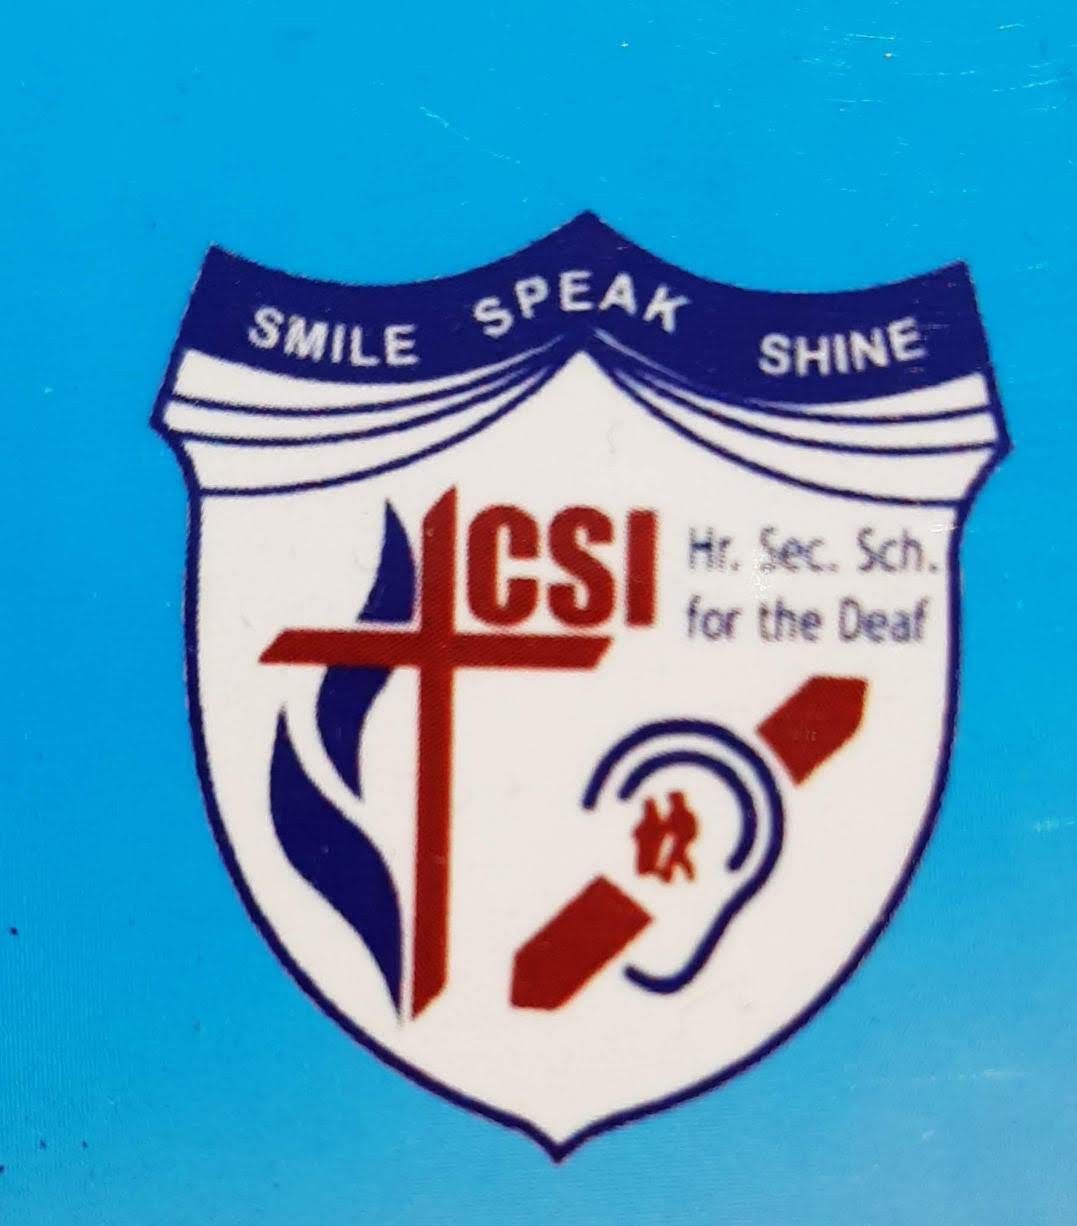 CSI Deaf School Chennai